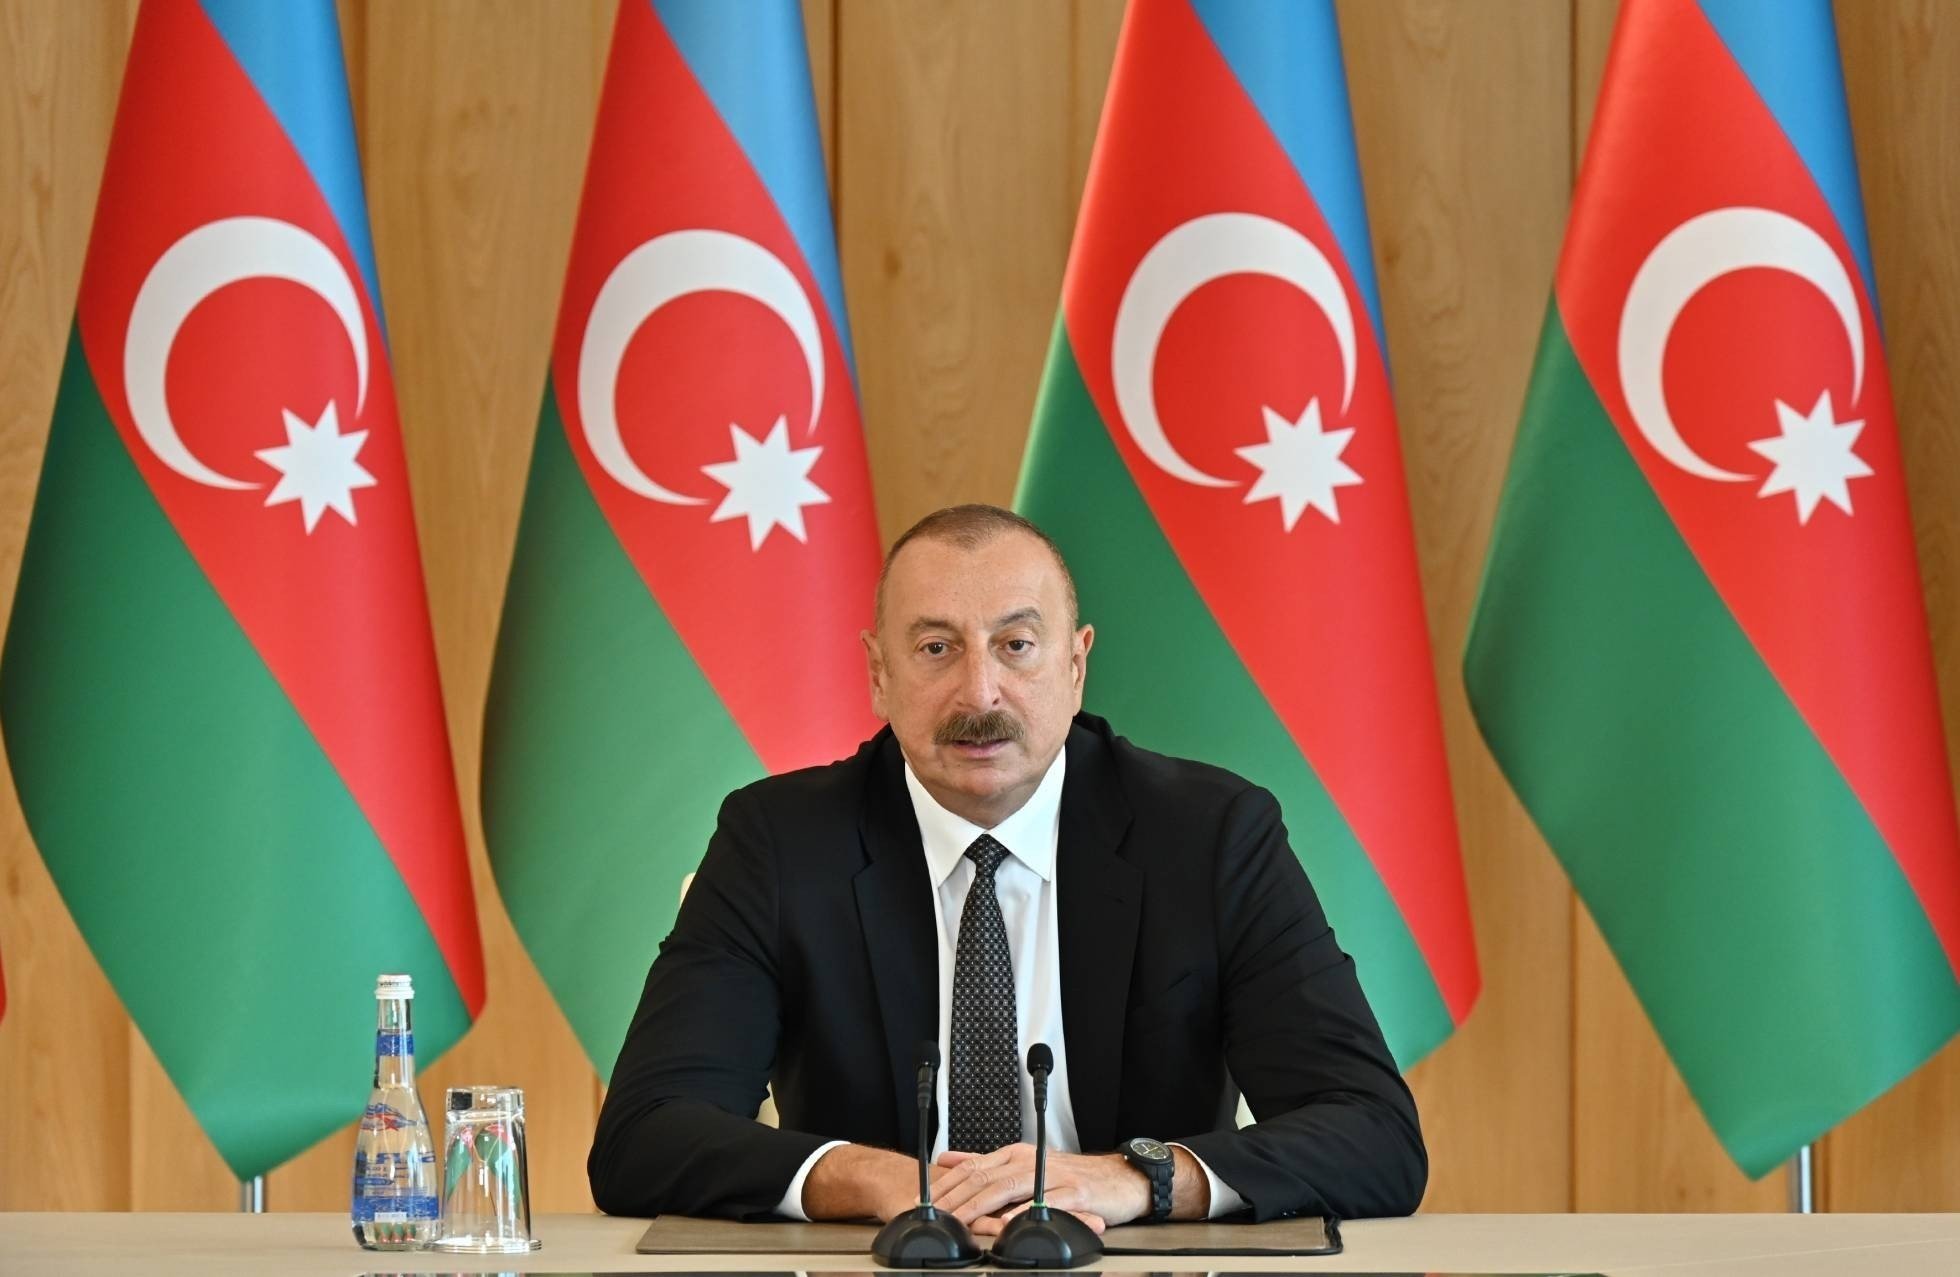 Presidenti azer Aliyev: S’mund të duam paqe e pastaj të sulmohet fqinji!